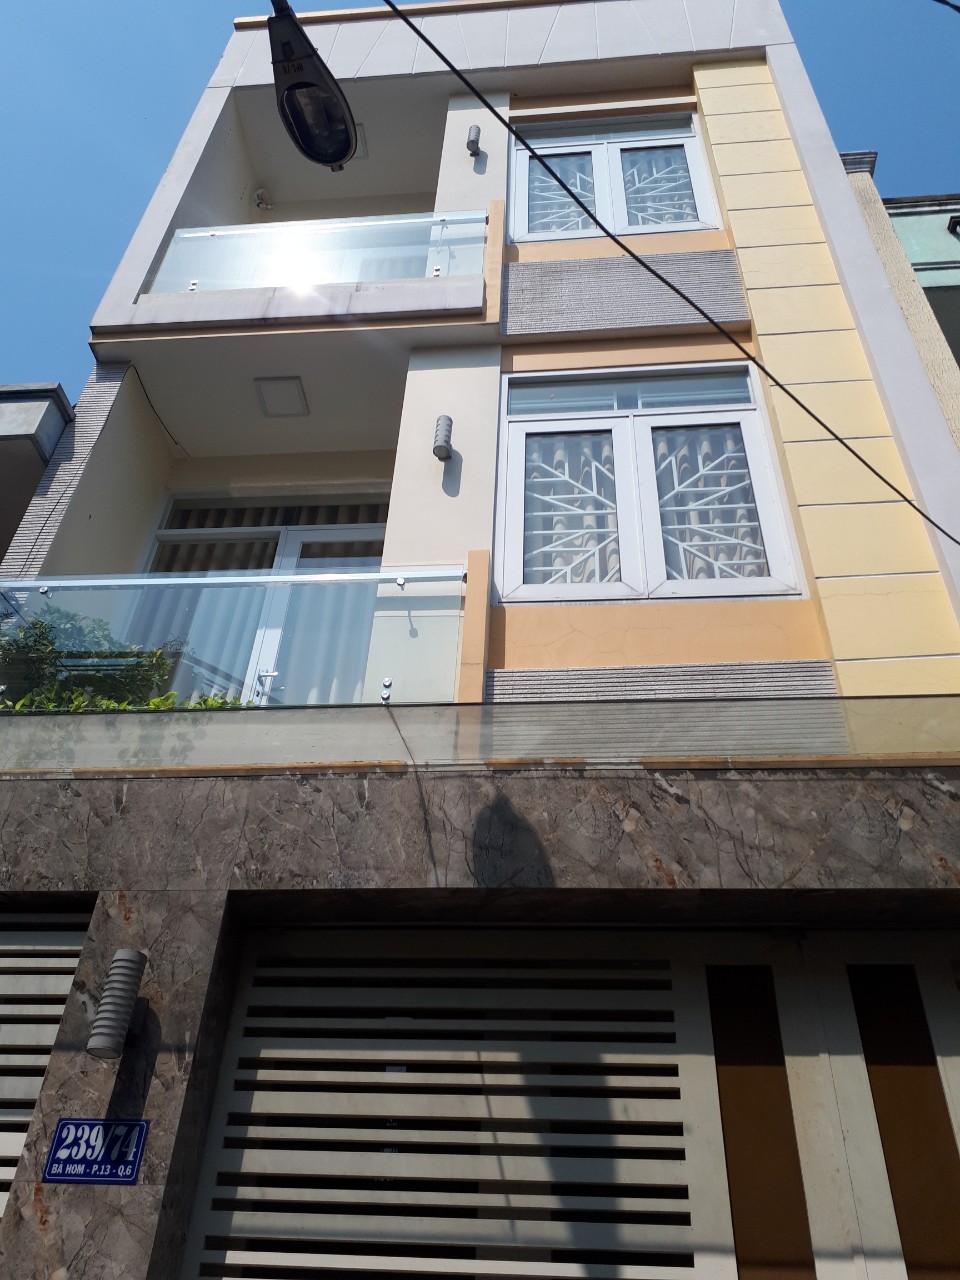 Cần tiền nên bán gấp nhà 4 tầng đường Nguyễn Đình Chiểu Quận 3 ngang rất rộng đến 3.5m.